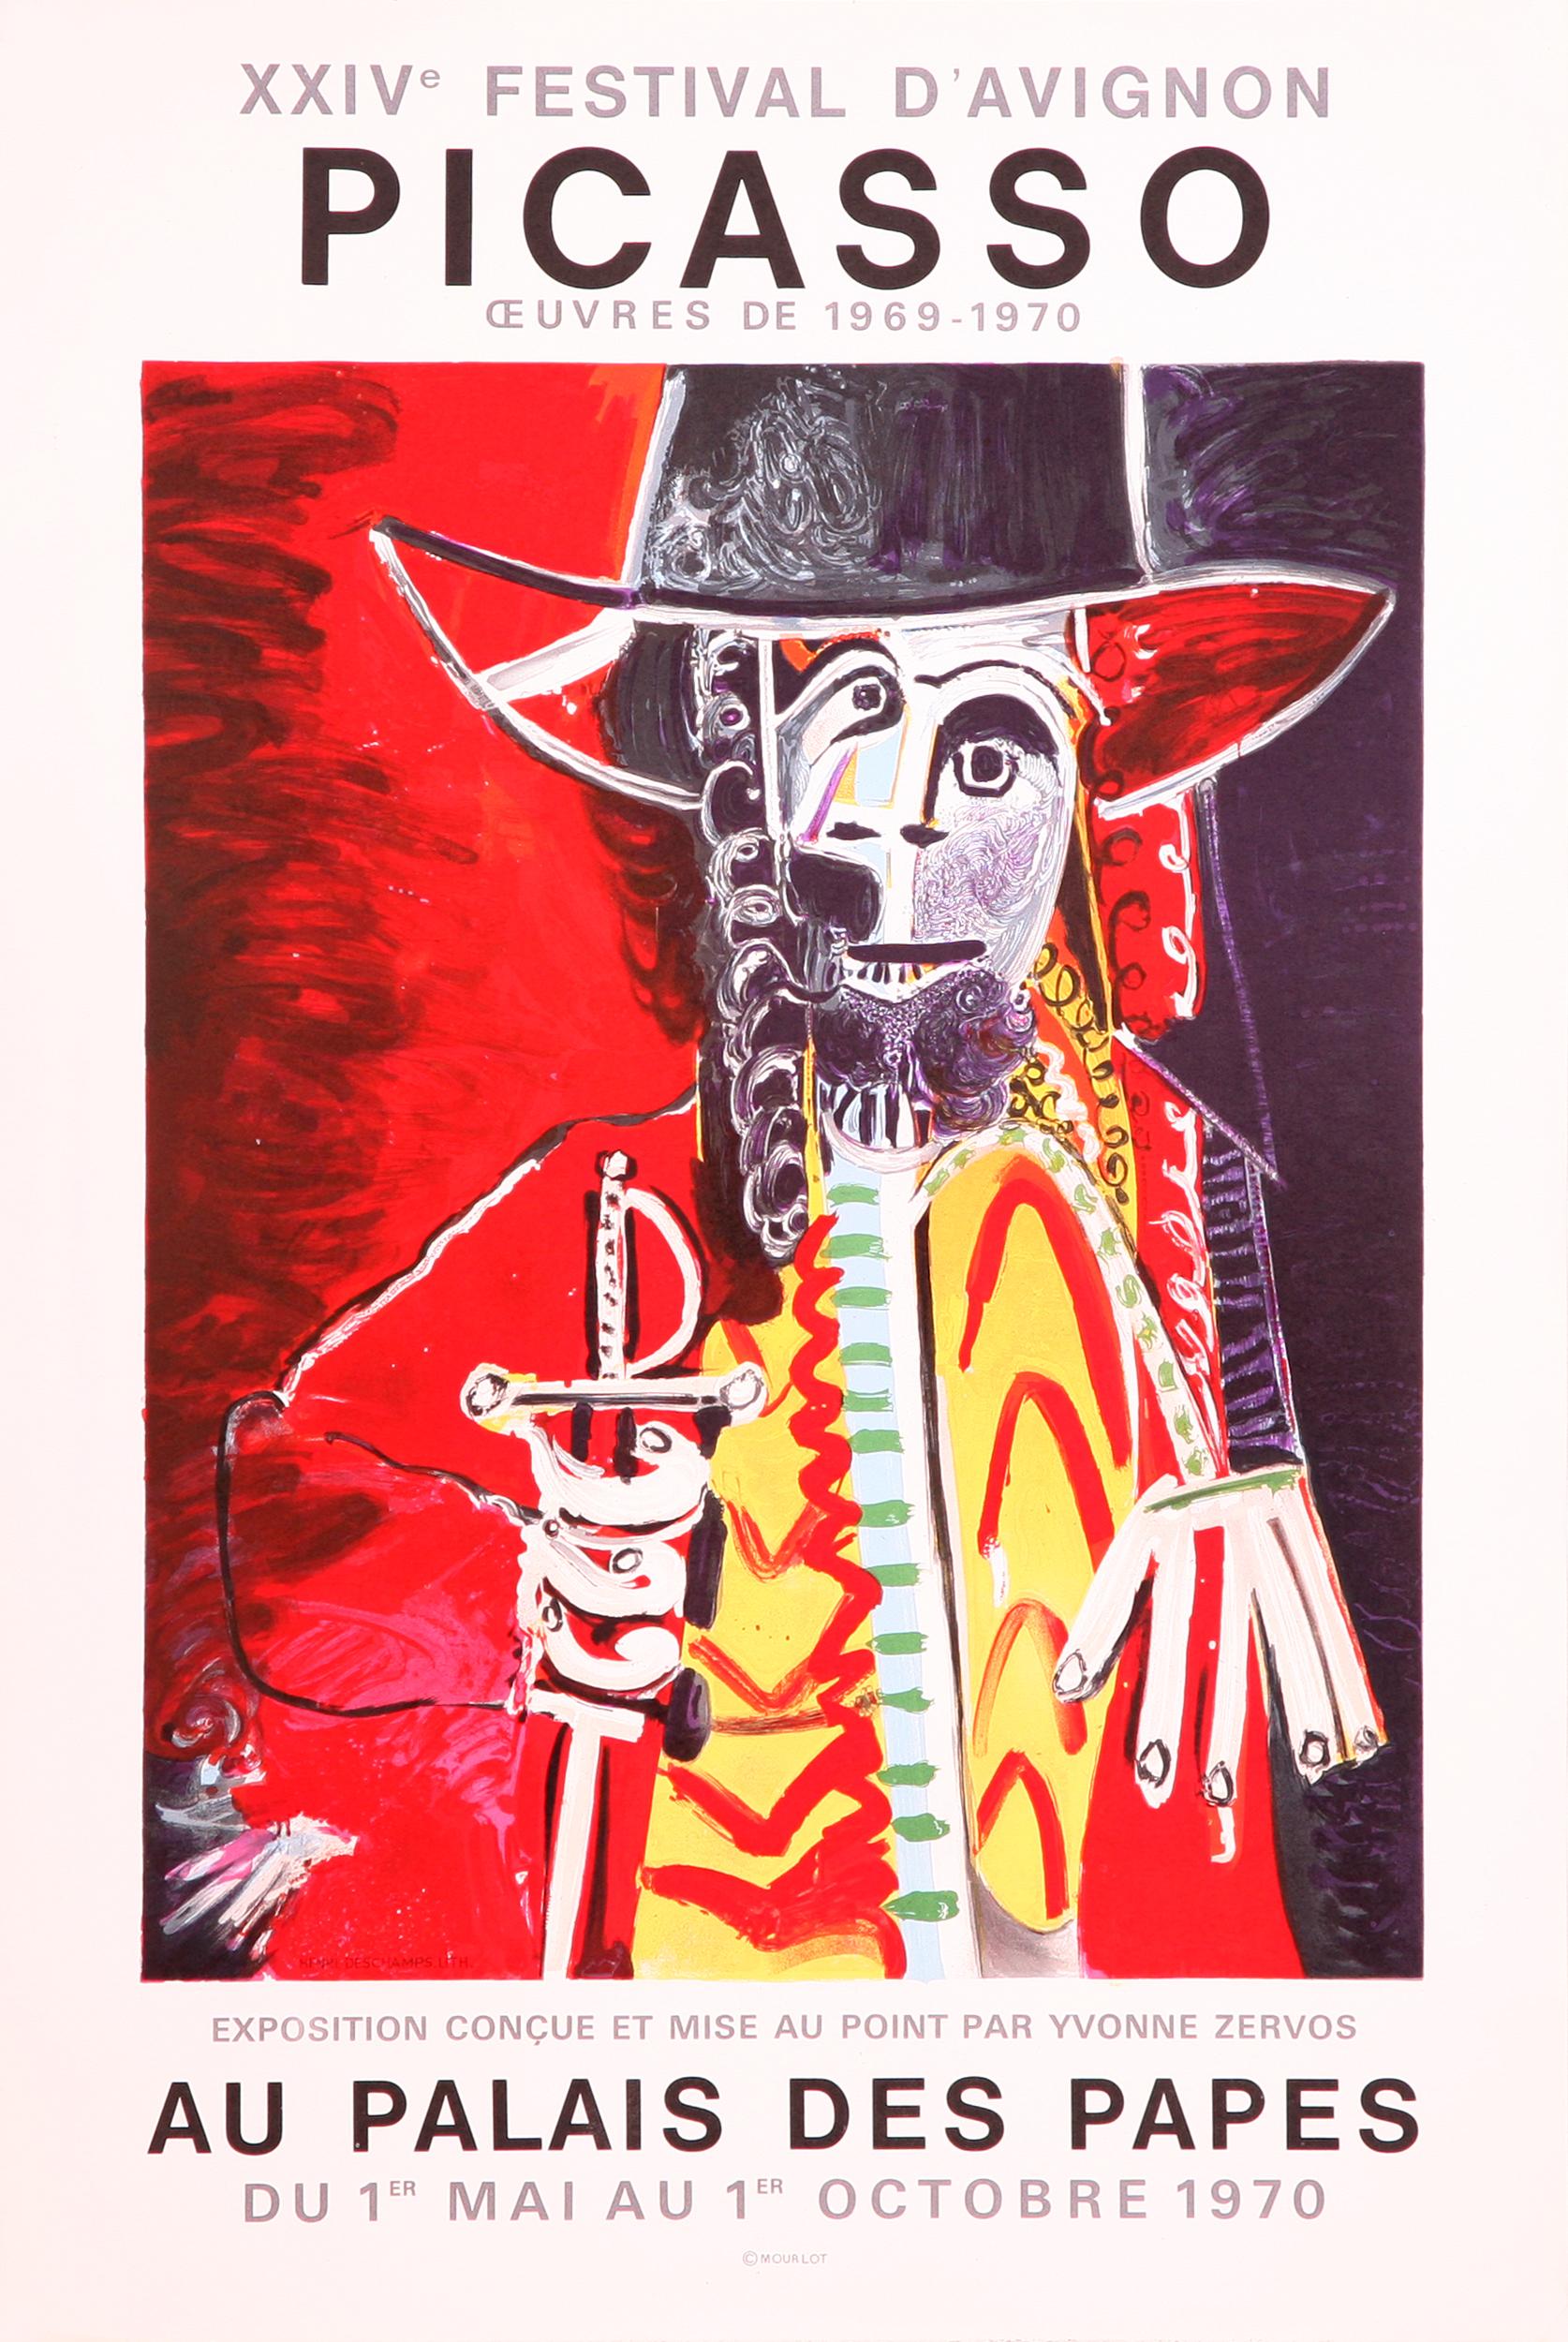 Homme a L'ep'ee Au Palais des Papes Poster - Print by Pablo Picasso